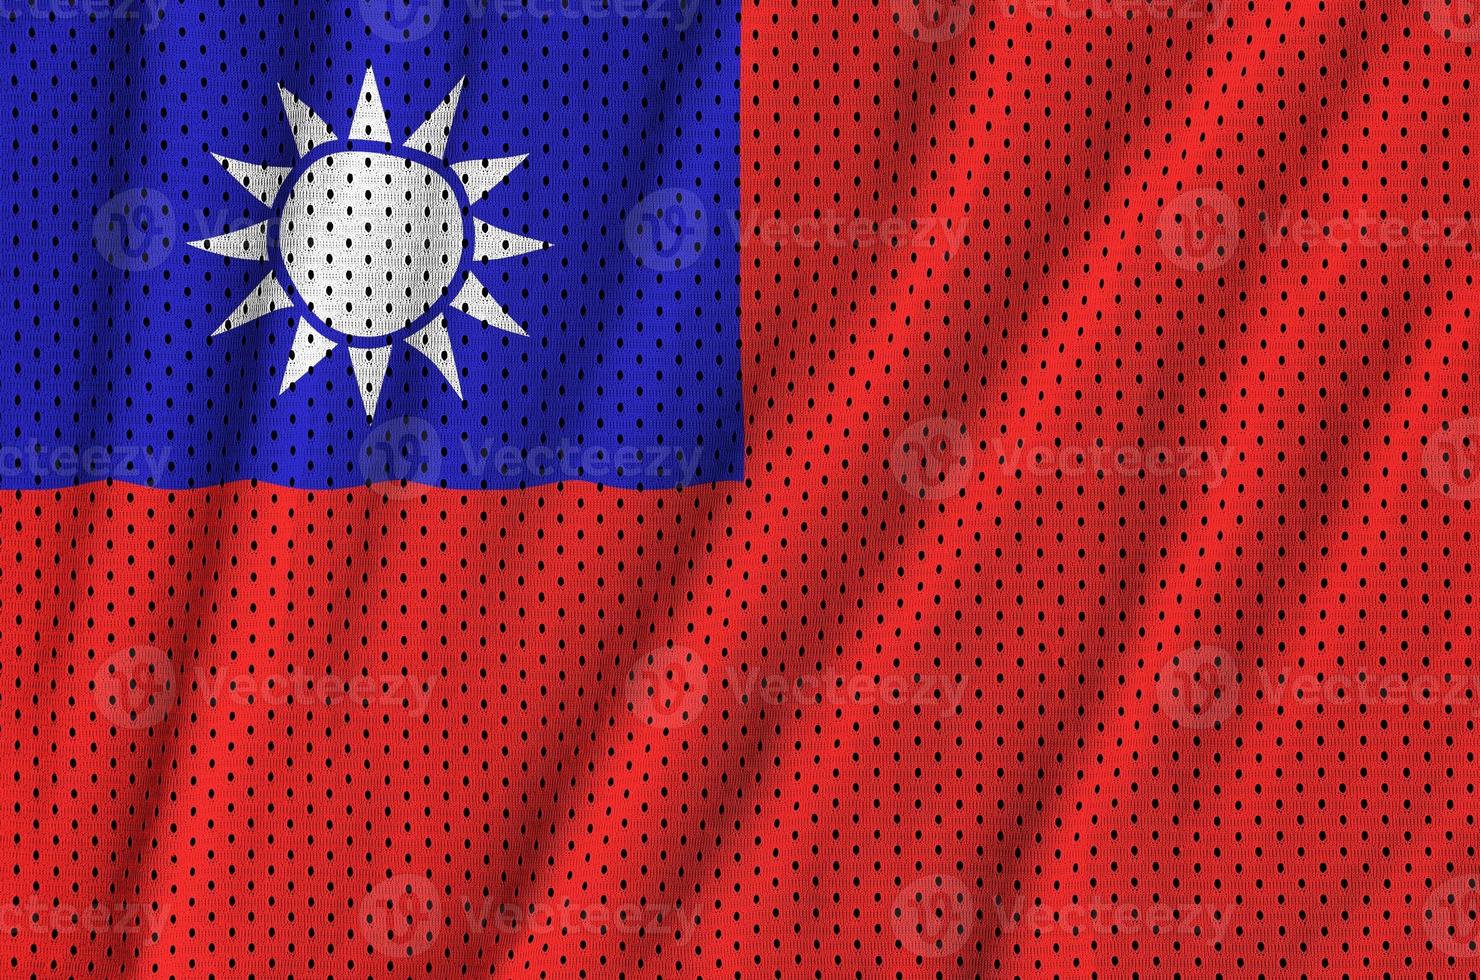 taiwan flagga tryckt på en polyester nylon- sportkläder maska tyg foto